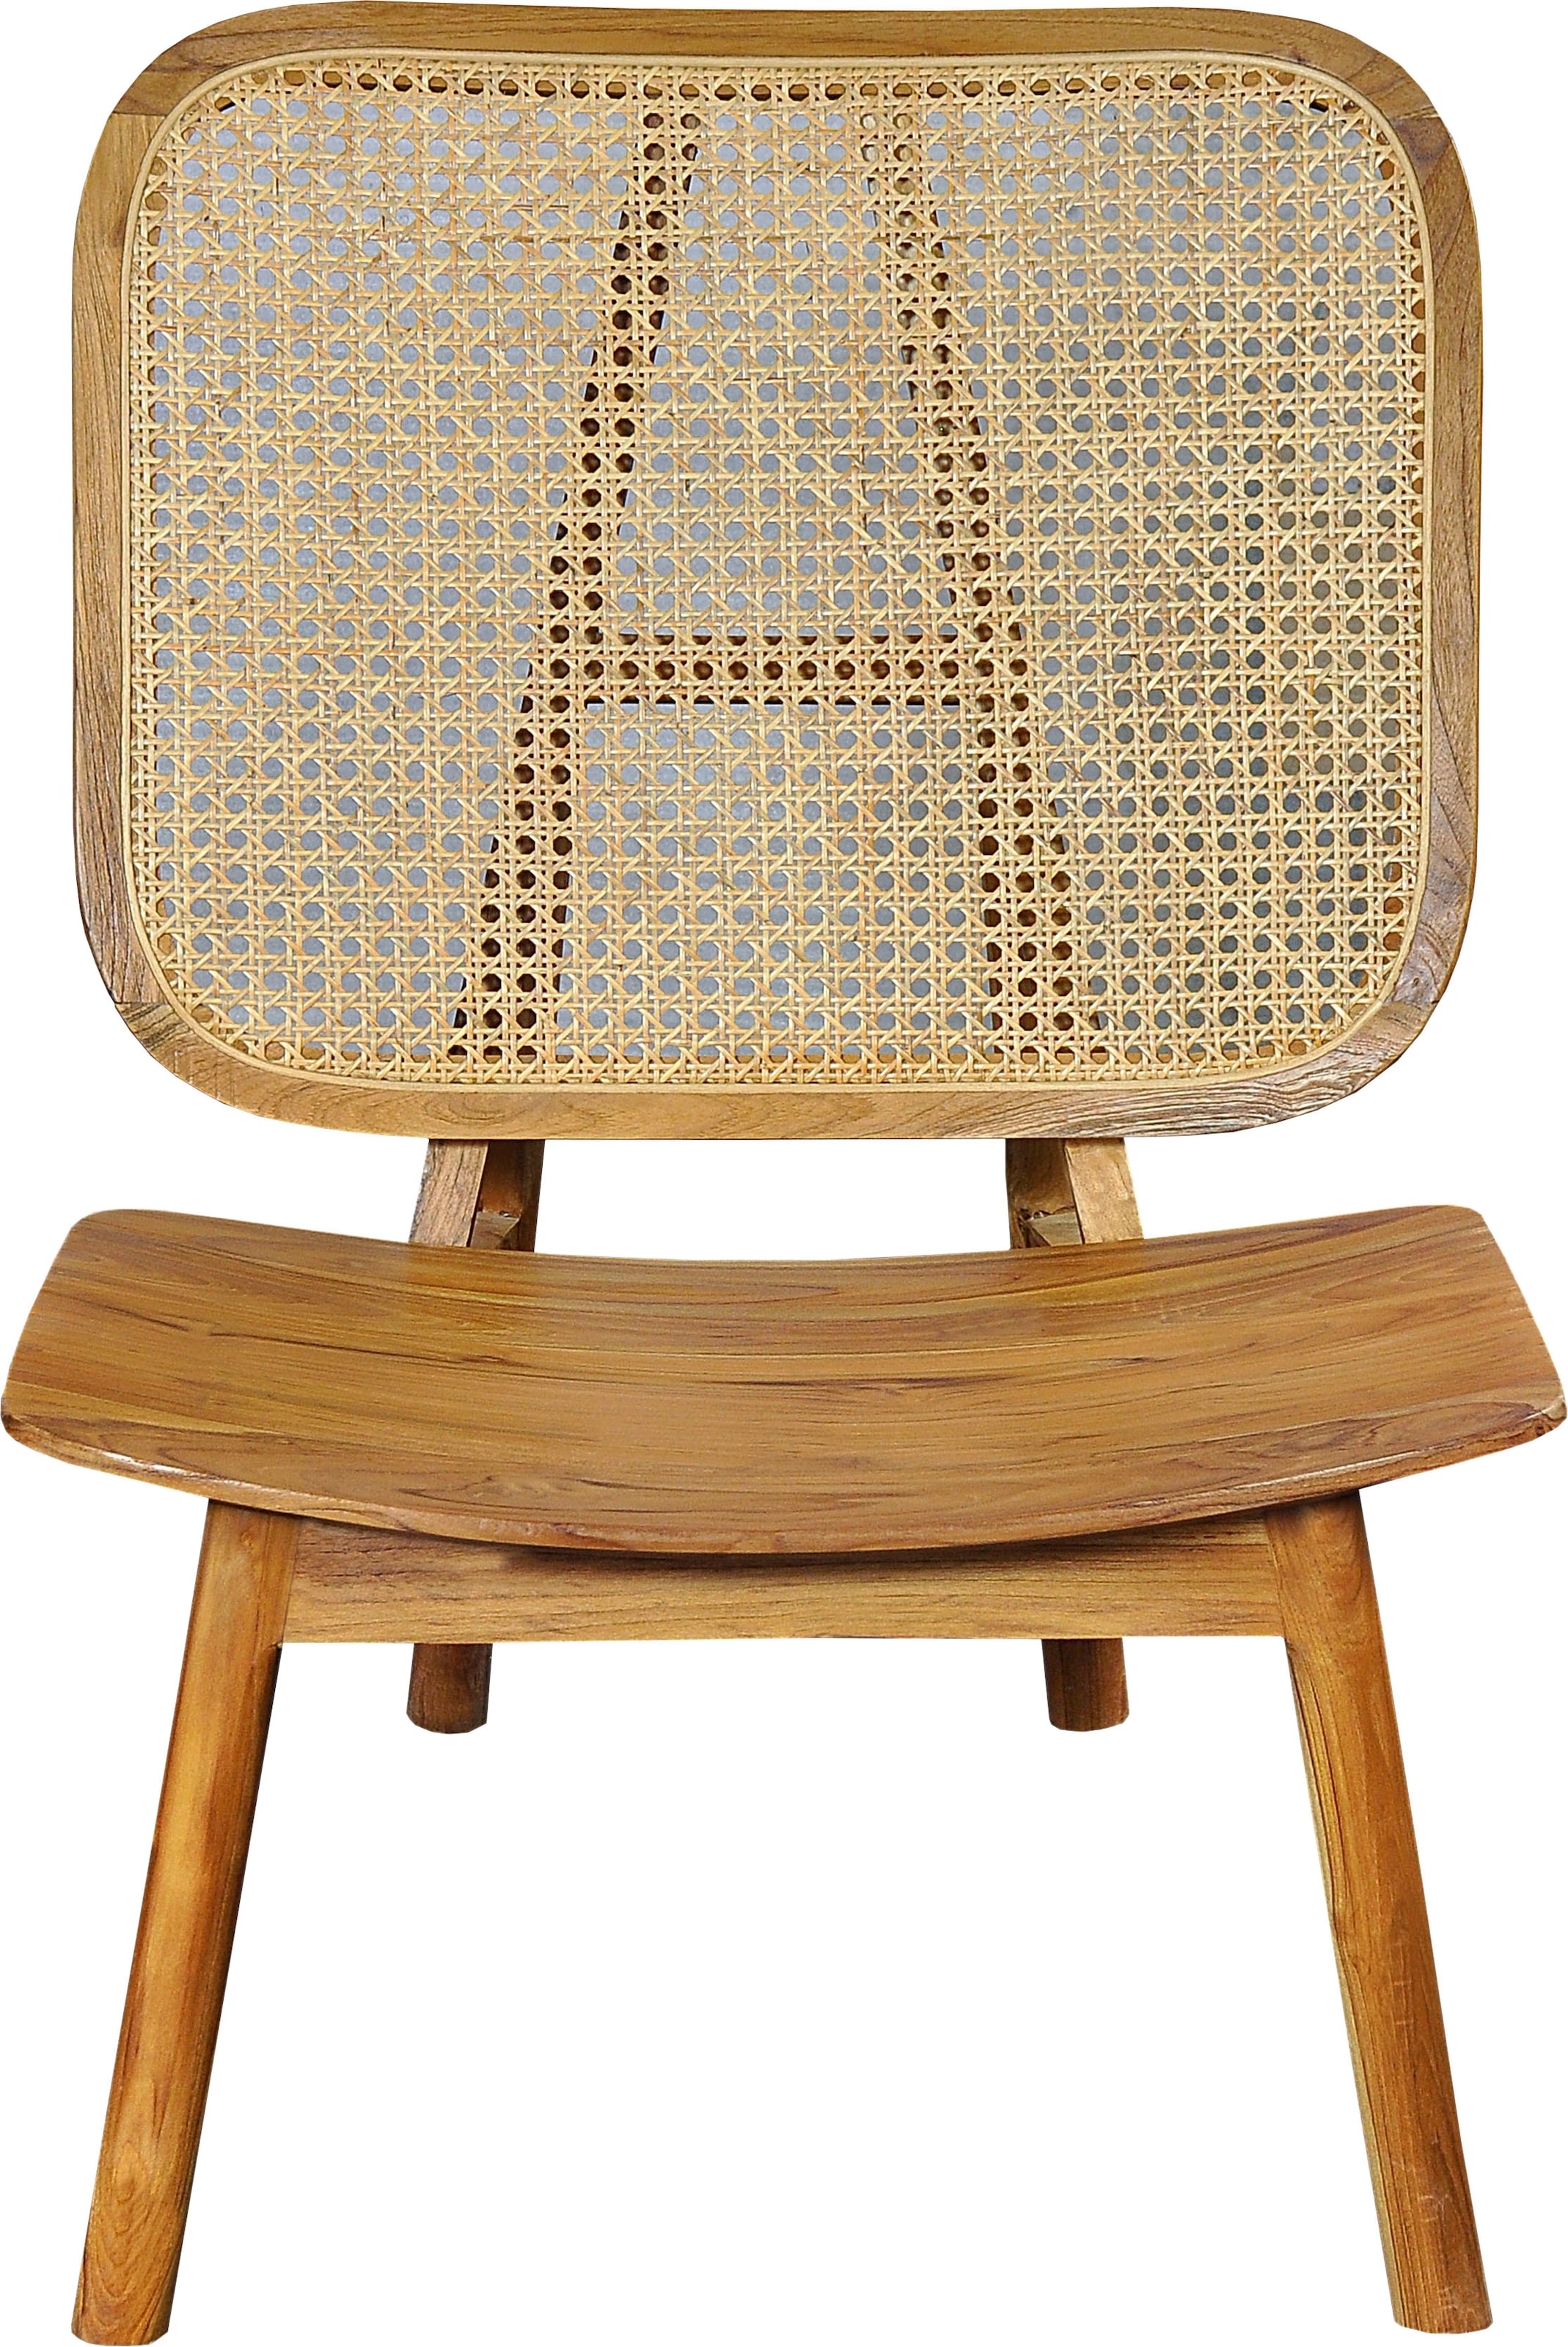 Rattanstuhl, mit Wiener Geflecht, moderner Lounge chair für alle Räume geeignet